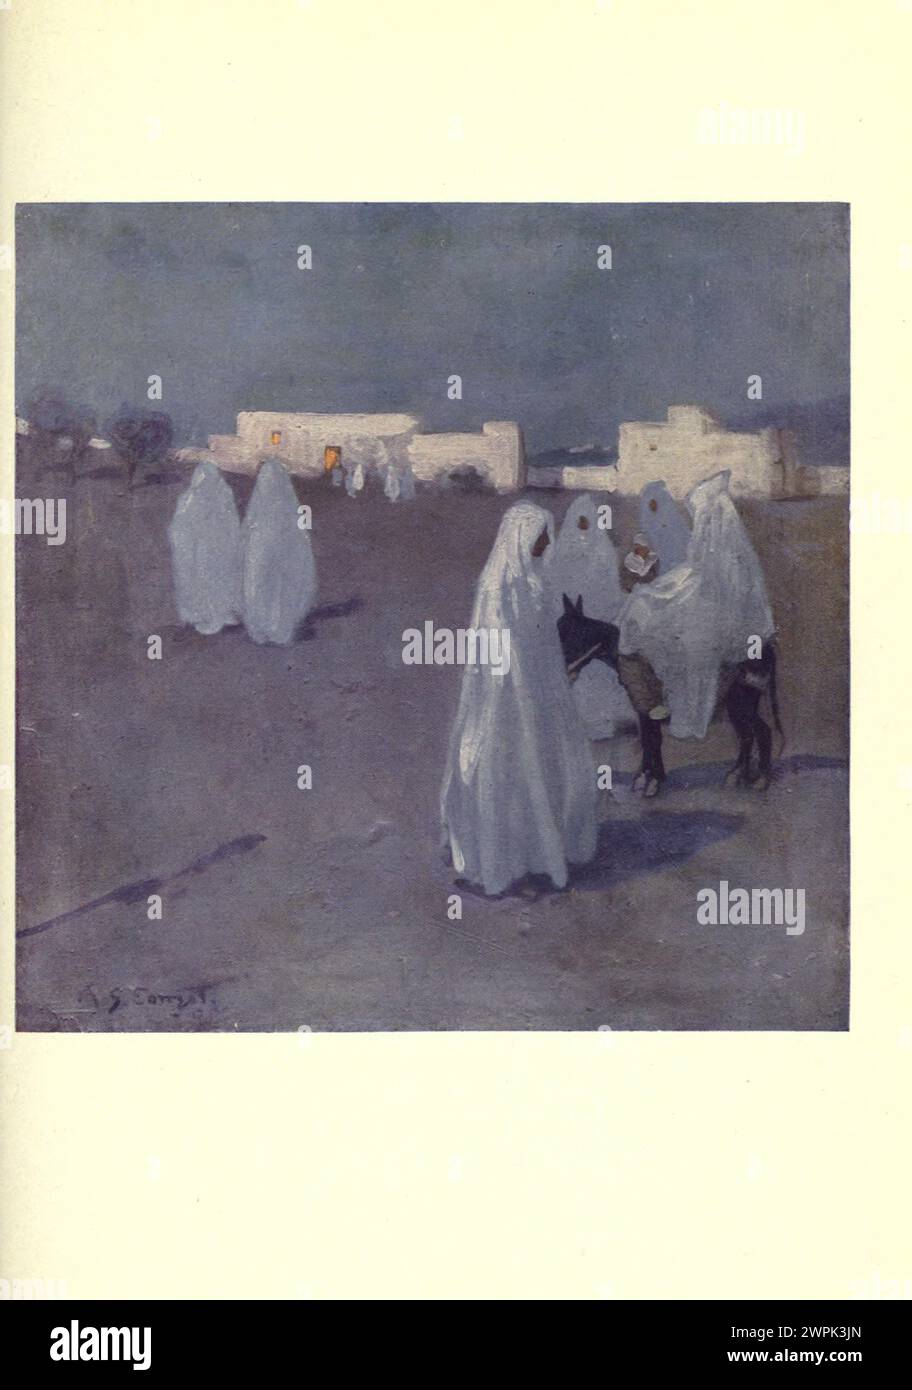 Moonlight Morocco dipinto da A. S. (Archibald Stevenson) Forrest, pittore, disegnatore e illustratore inglese, l'illustrazione è stata incisa in Inghilterra dal processo di Hentschel Colourtype. Foto Stock